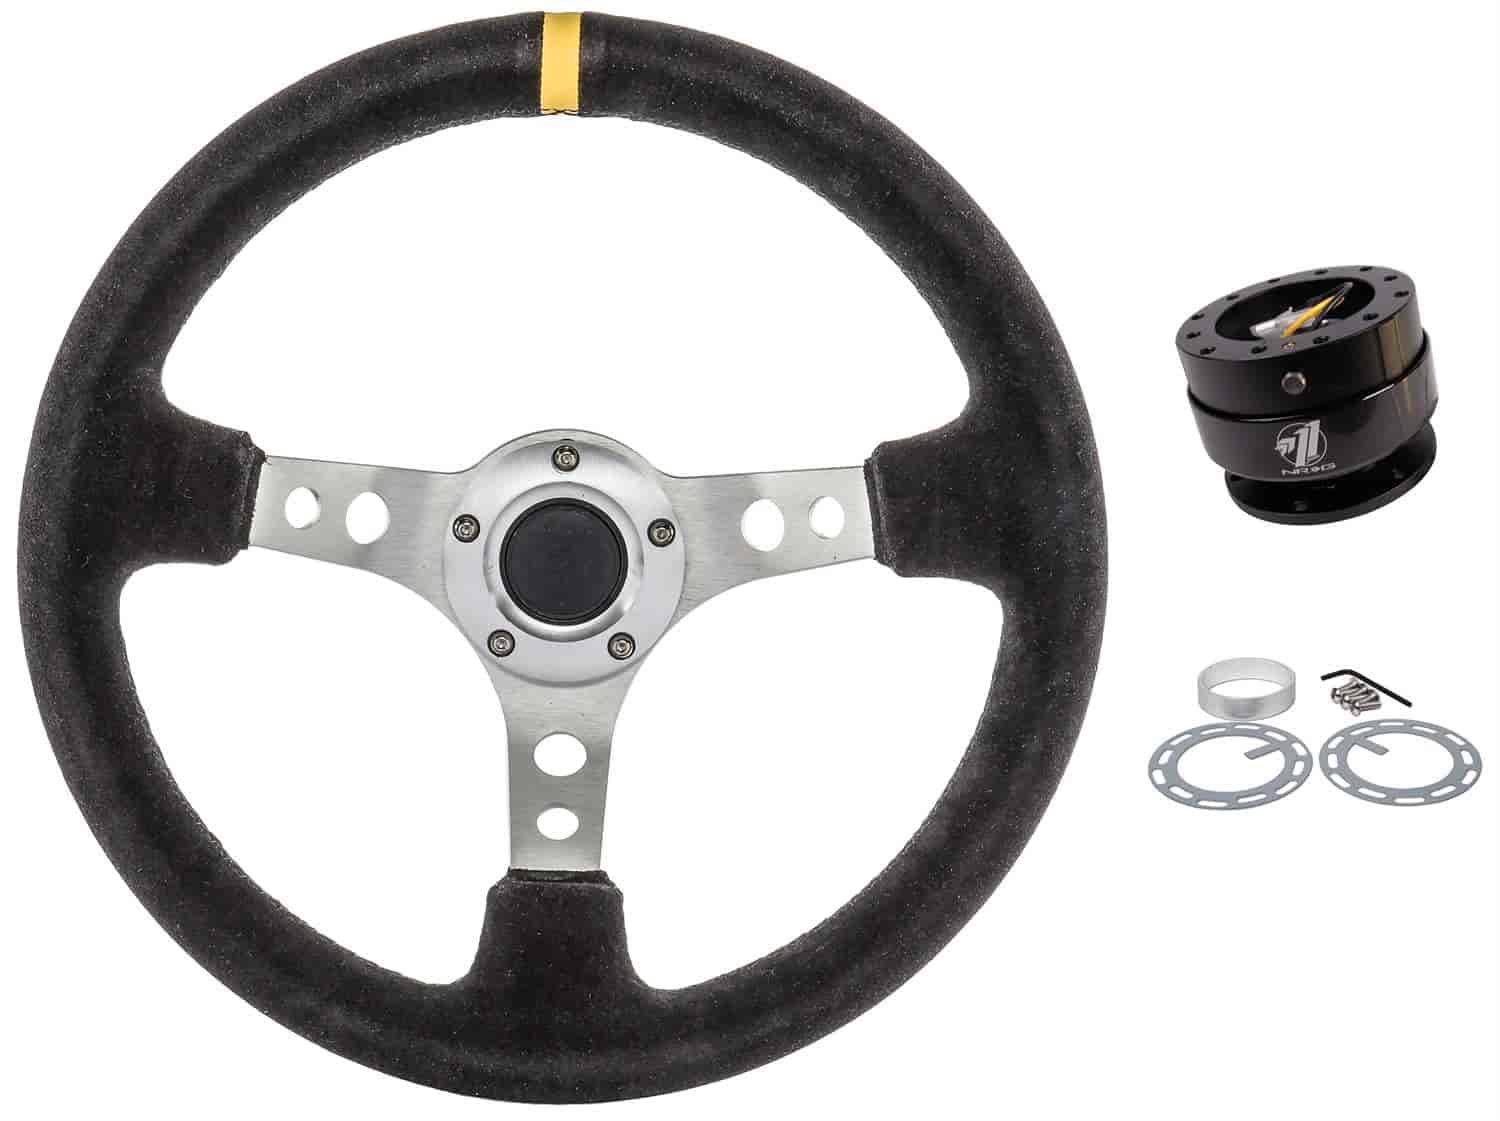 Racing Steering Wheel Kit